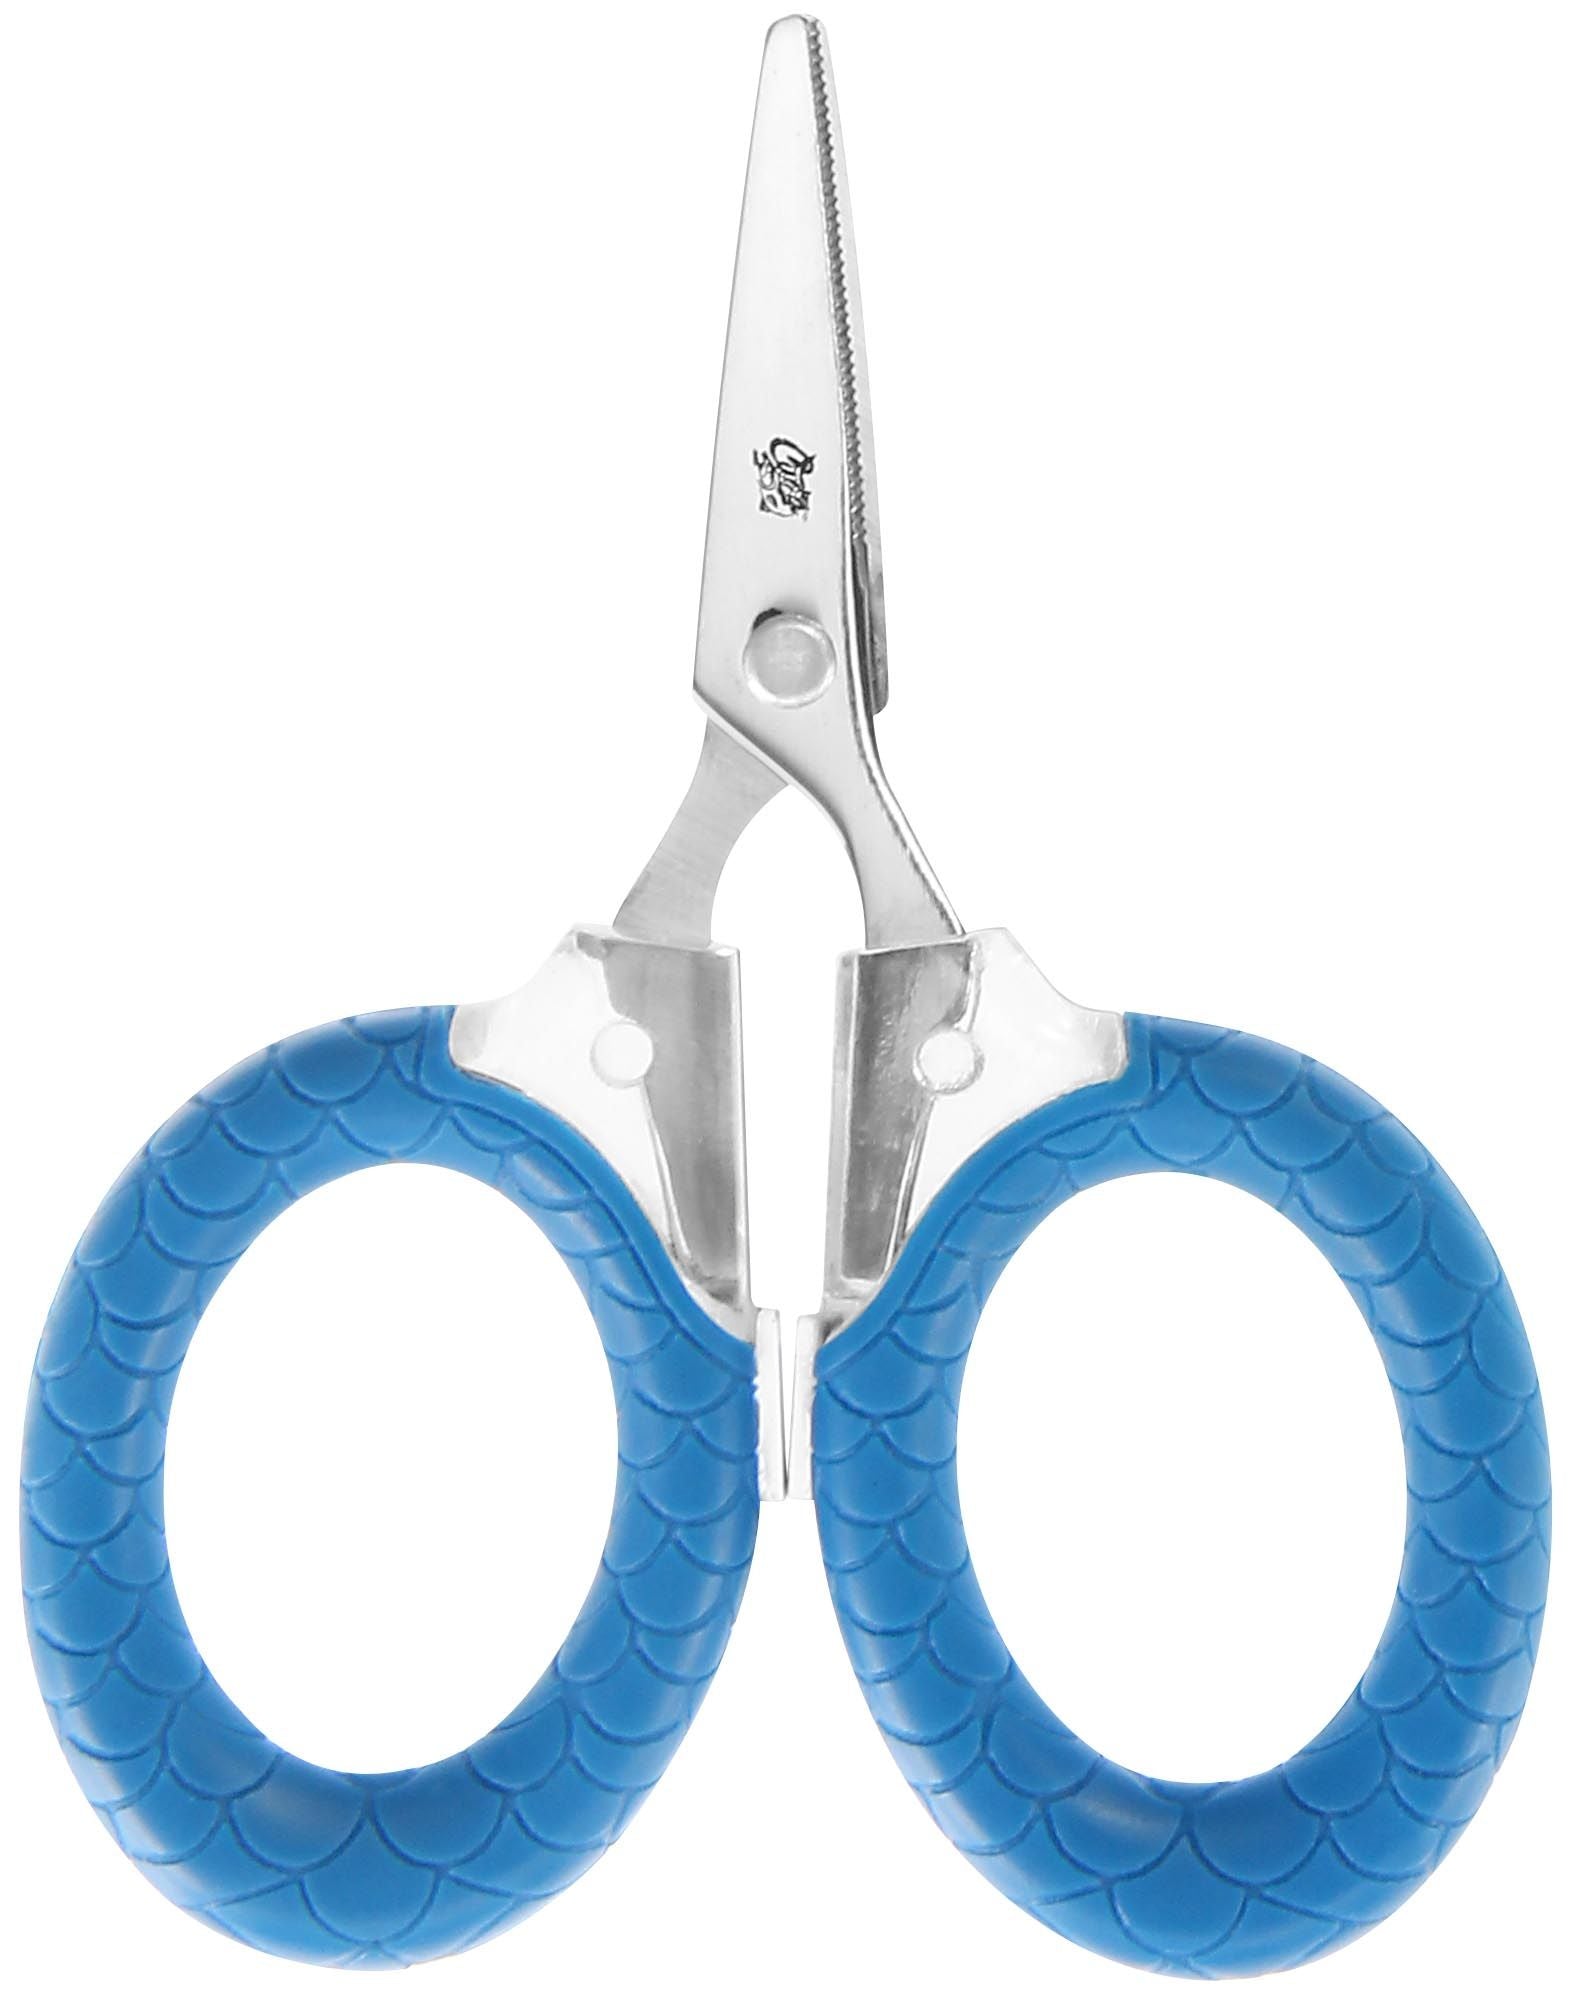 Cuda - 3in Micro Braid Scissors